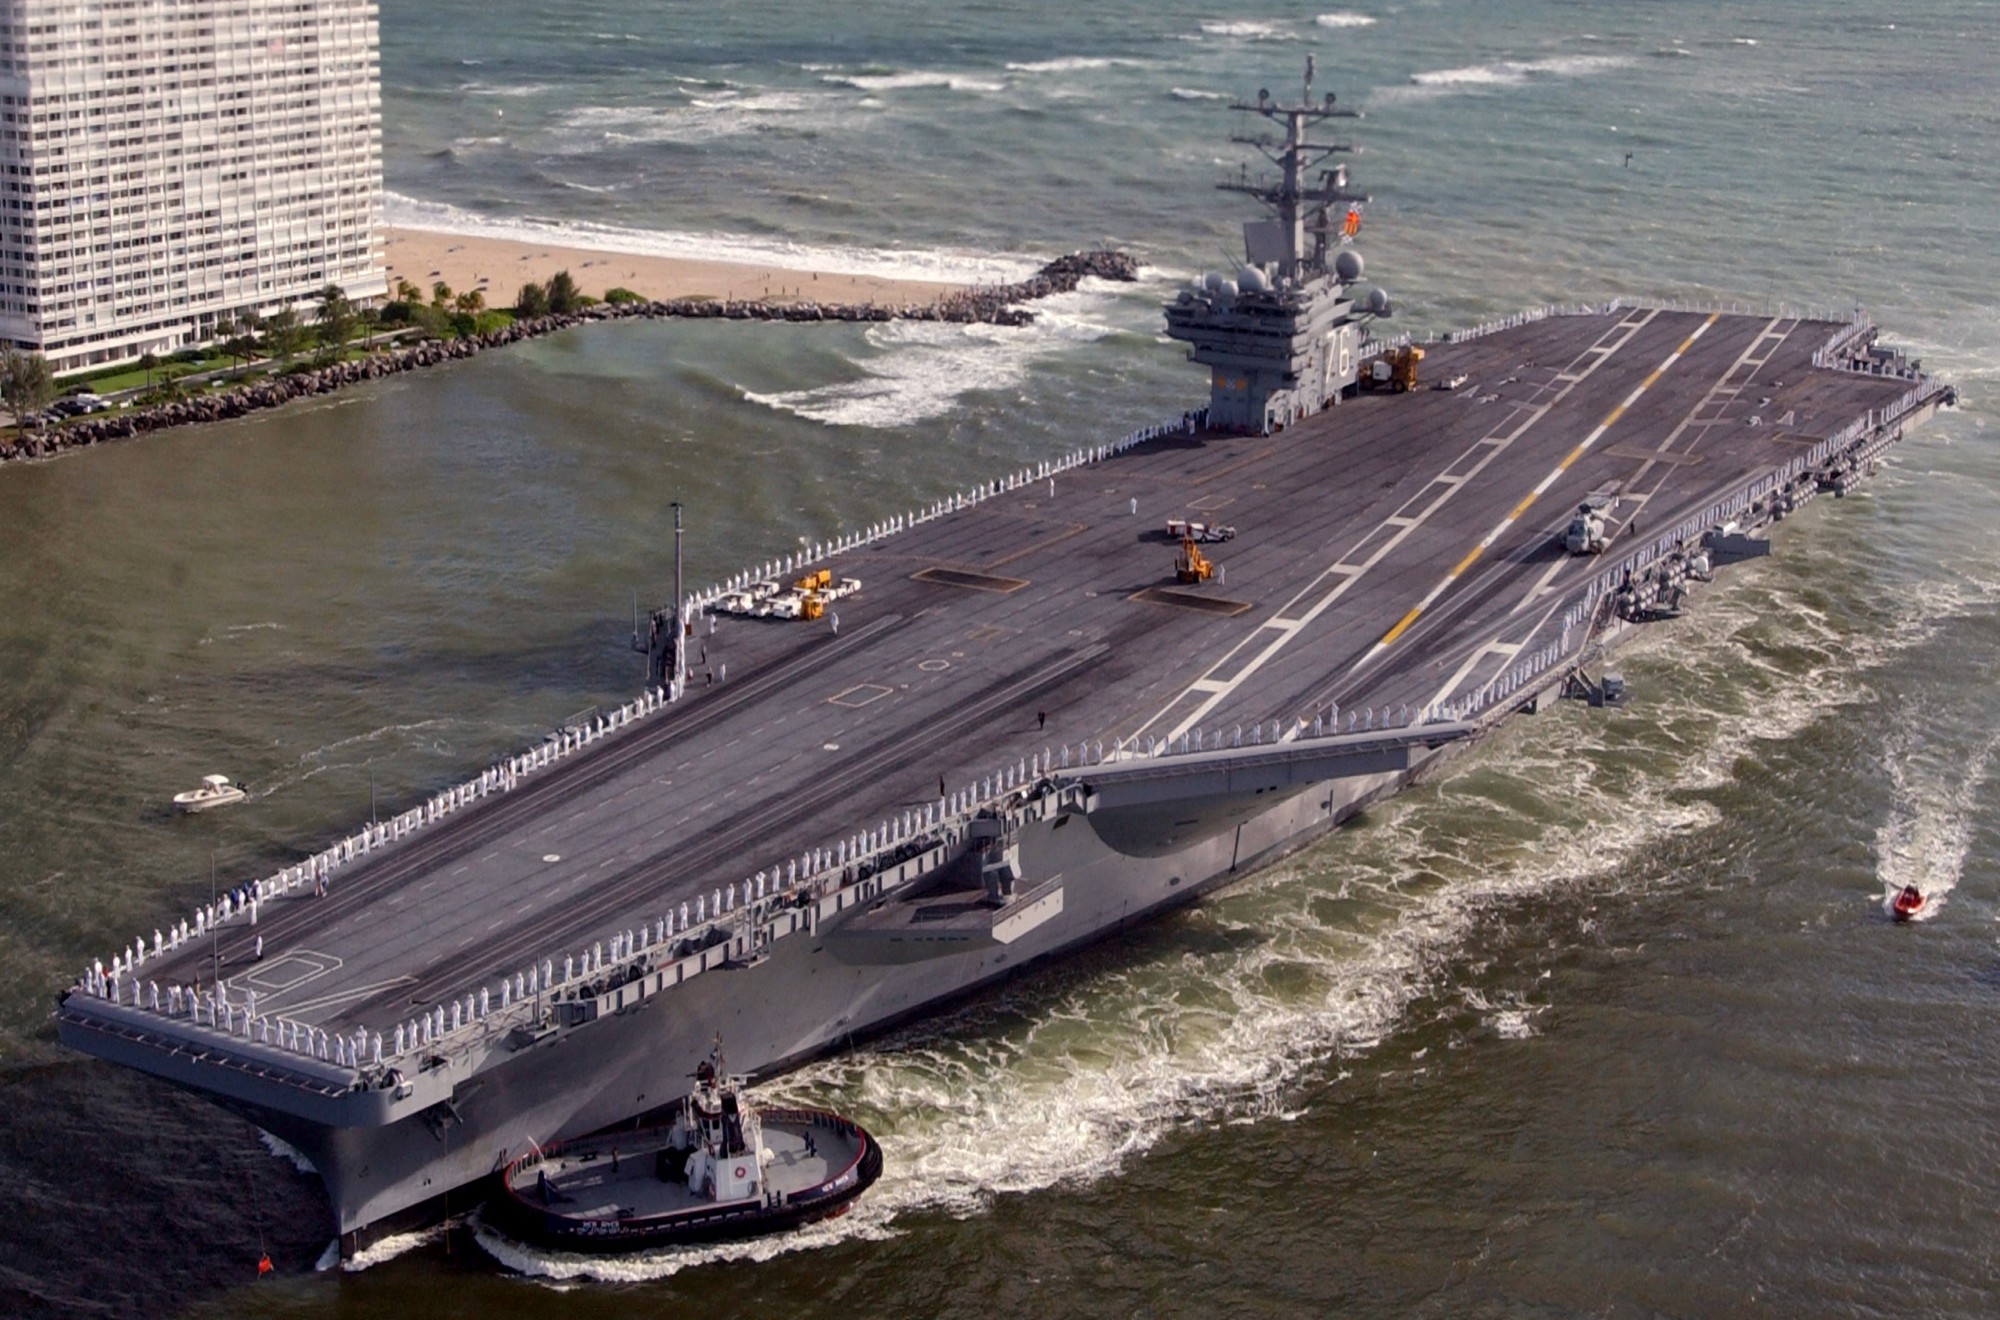 cvn-76 uss ronald reagan aircraft carrier fort lauderdale florida 2003 12